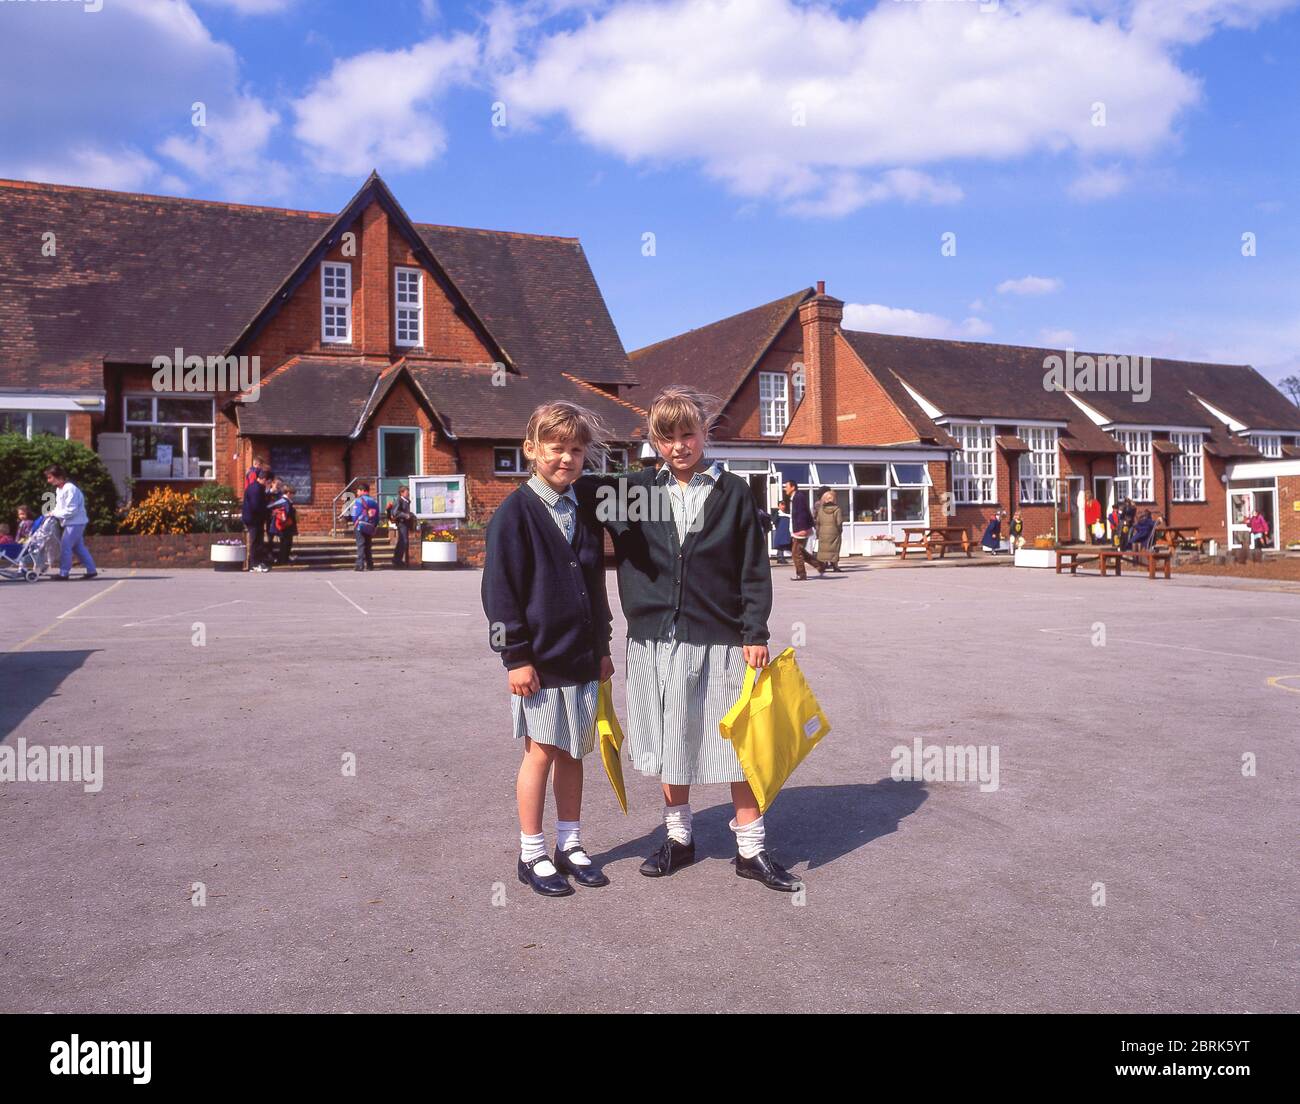 Ragazze nel campo giochi scolastico presso la scuola elementare Holy Trinity, Church Road, Sunningdale, Berkshire, Inghilterra, Regno Unito Foto Stock